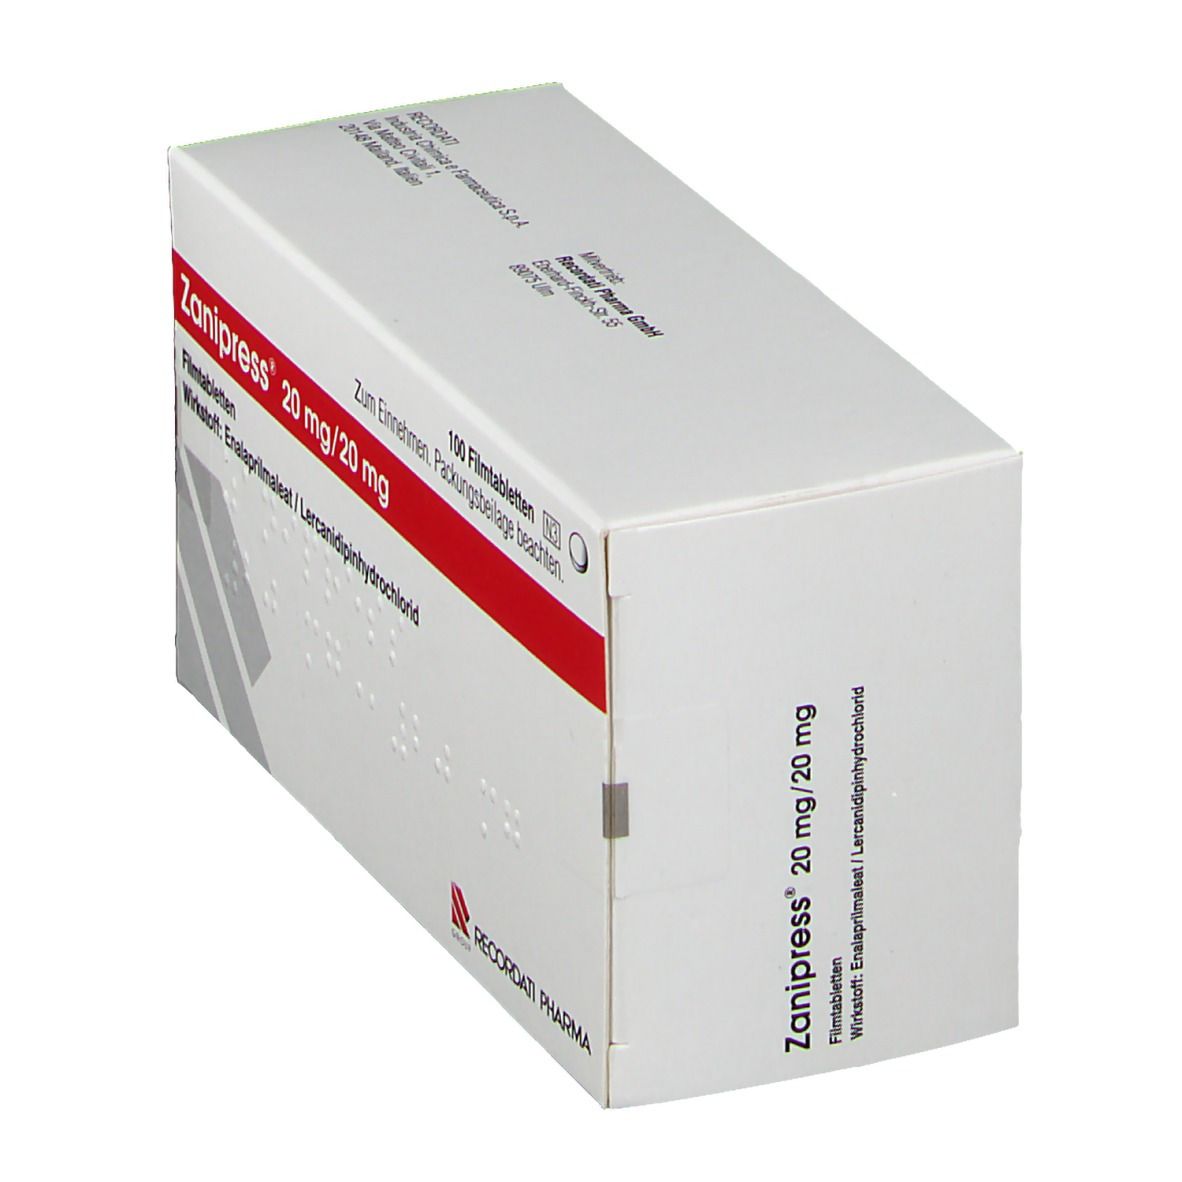 Zanipress® 20 mg/20 mg